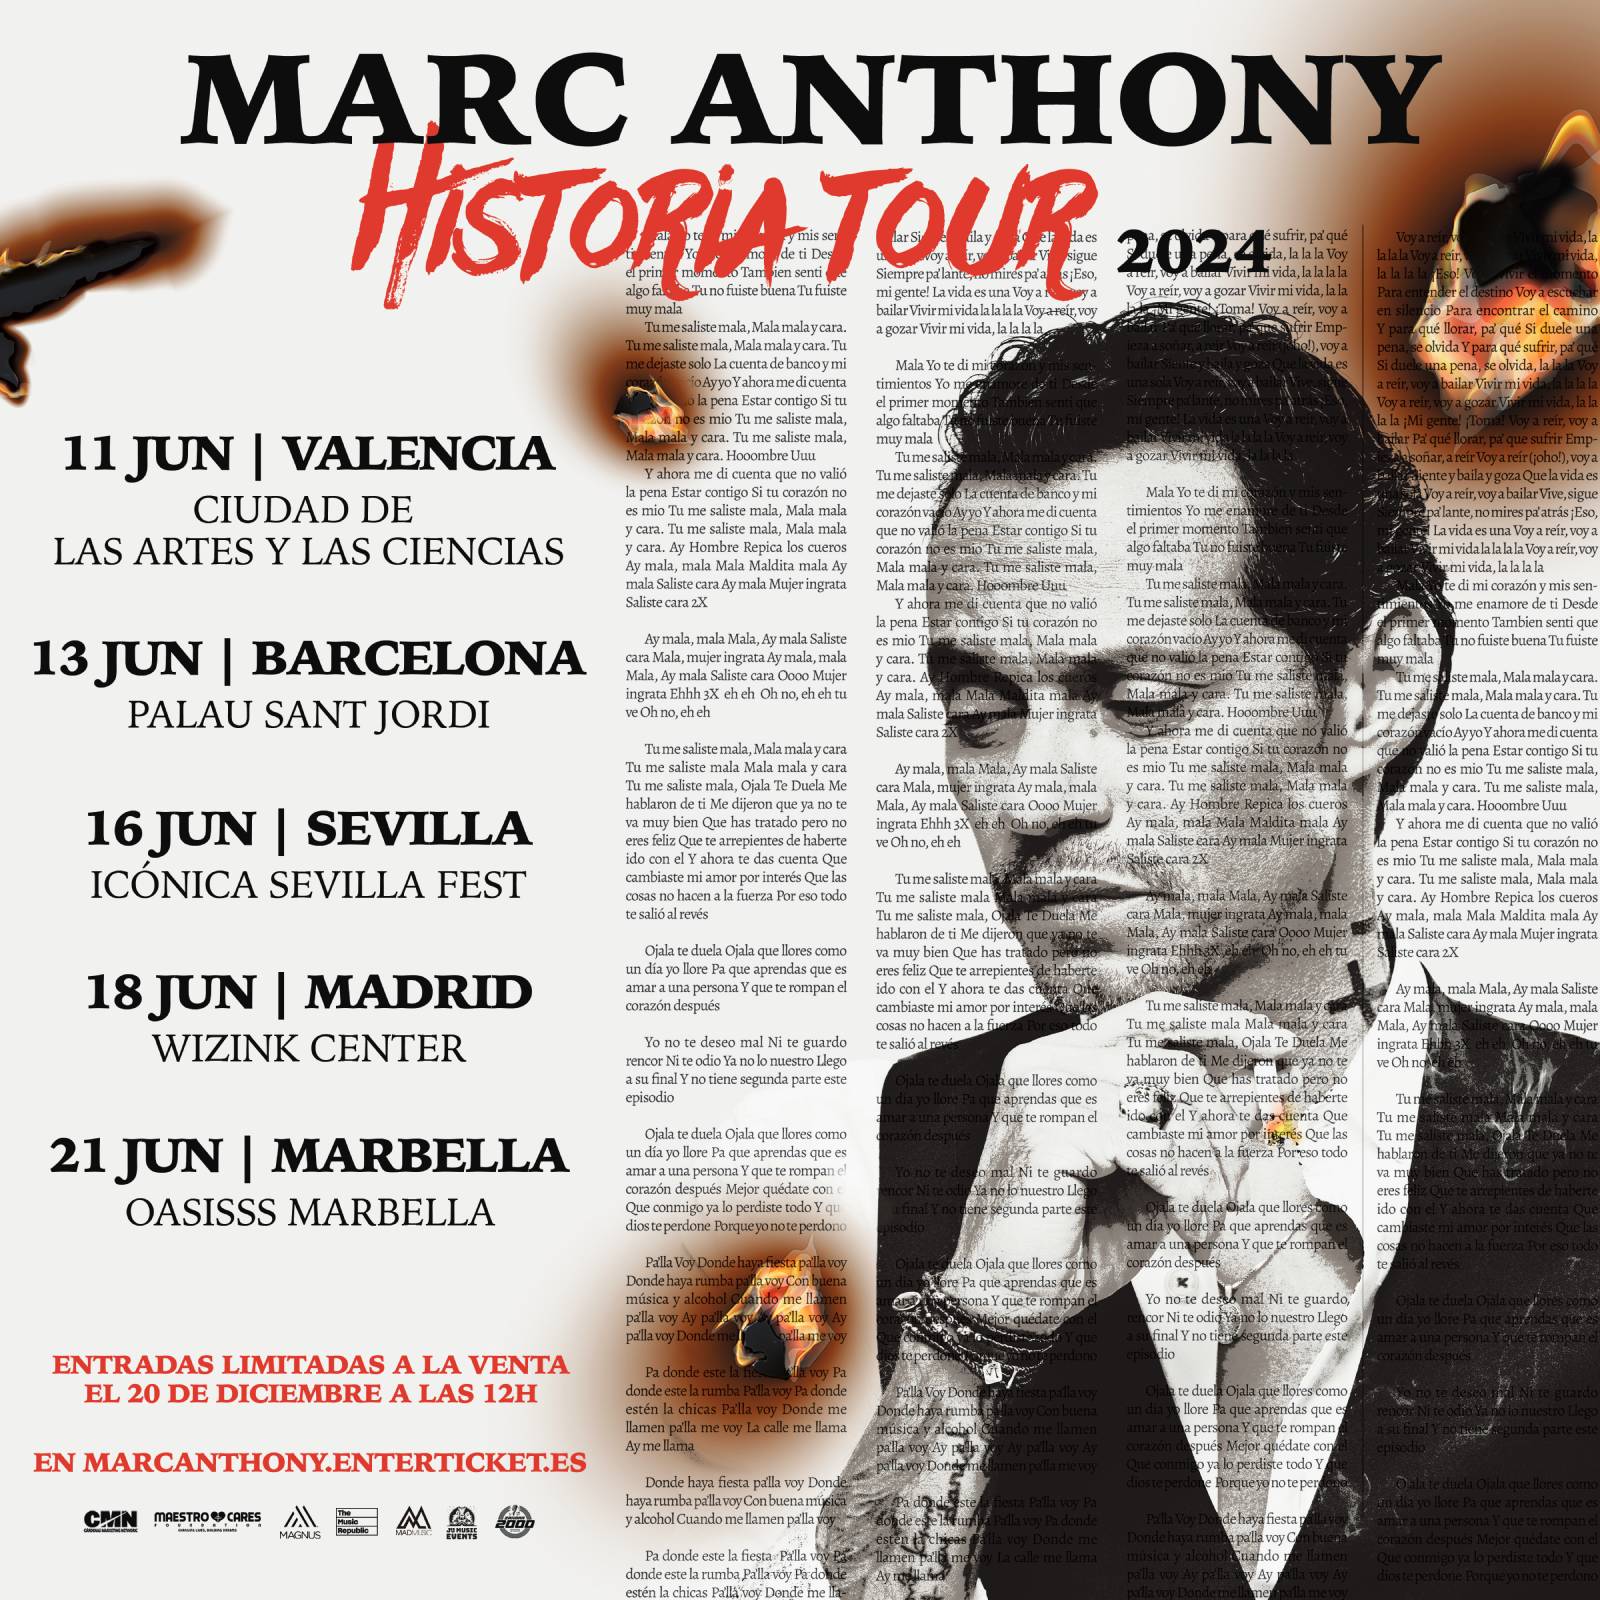 Marc Anthony - Historia Tour 2024. 11 junio Valencia (Ciudad de las Artes y las Ciencias), 13 junio Barcelona (Palau Sant Jordi), 16 junio Sevilla (Icónica Sevilla Fest), 18 junio Madrid (Wizink Center), 21 junio Marbella (Oasisss Marbella)